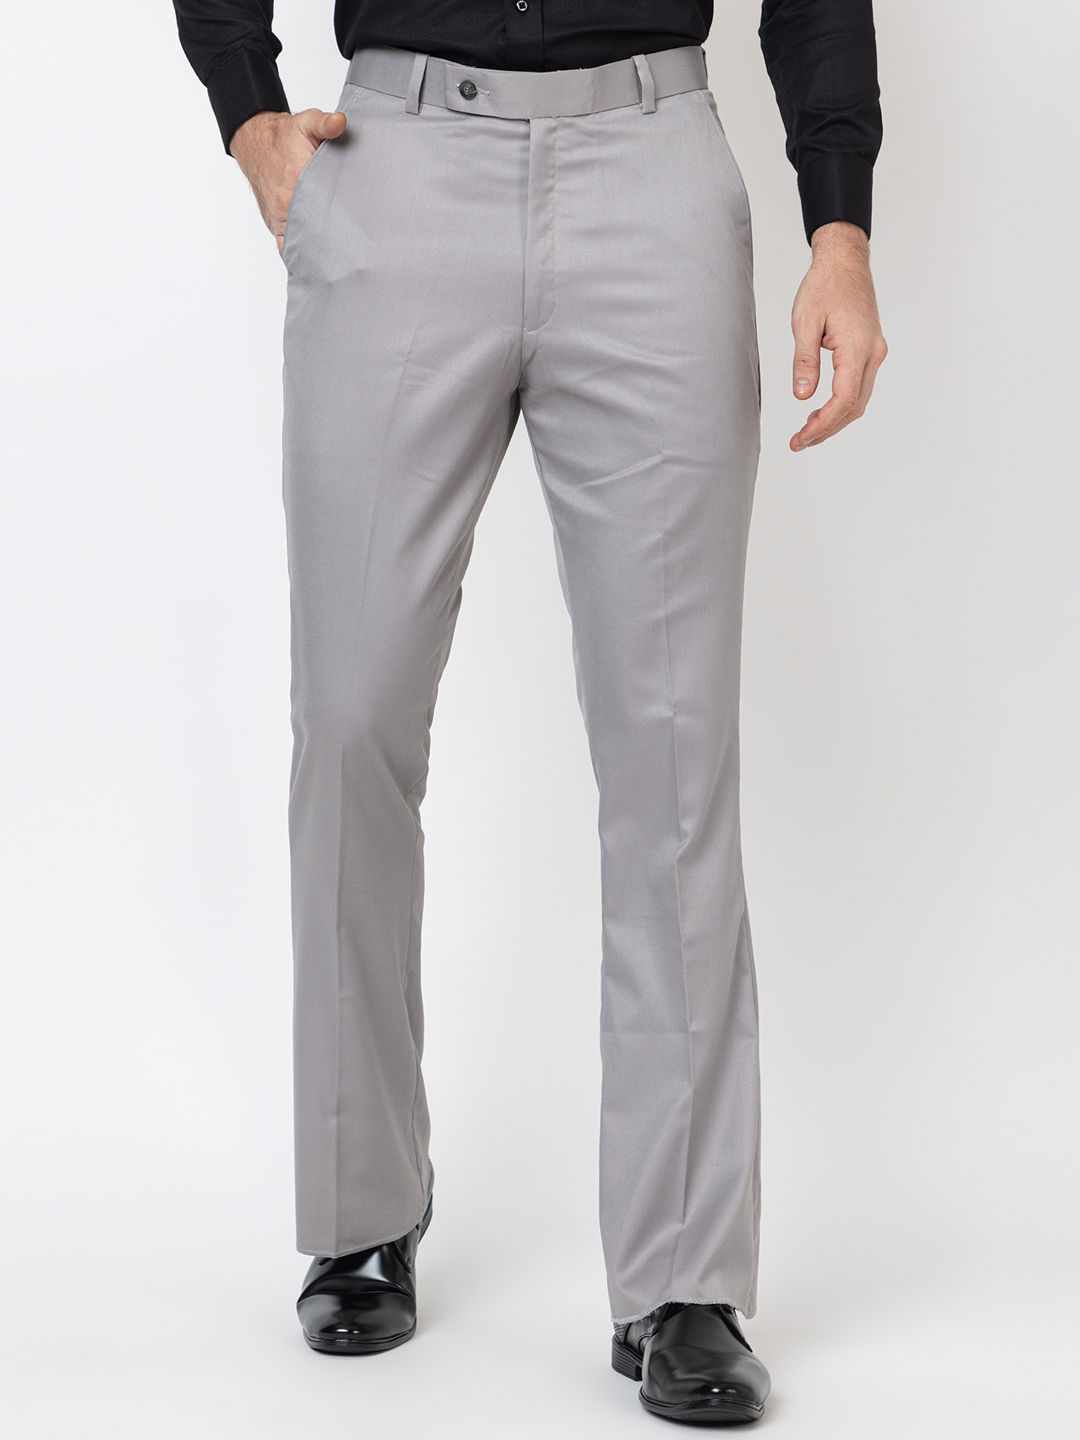 Ralph Lauren Silver Label Trim Fit Cantaloupe Orange Flat Front Cotton Pants  | The Suit Depot